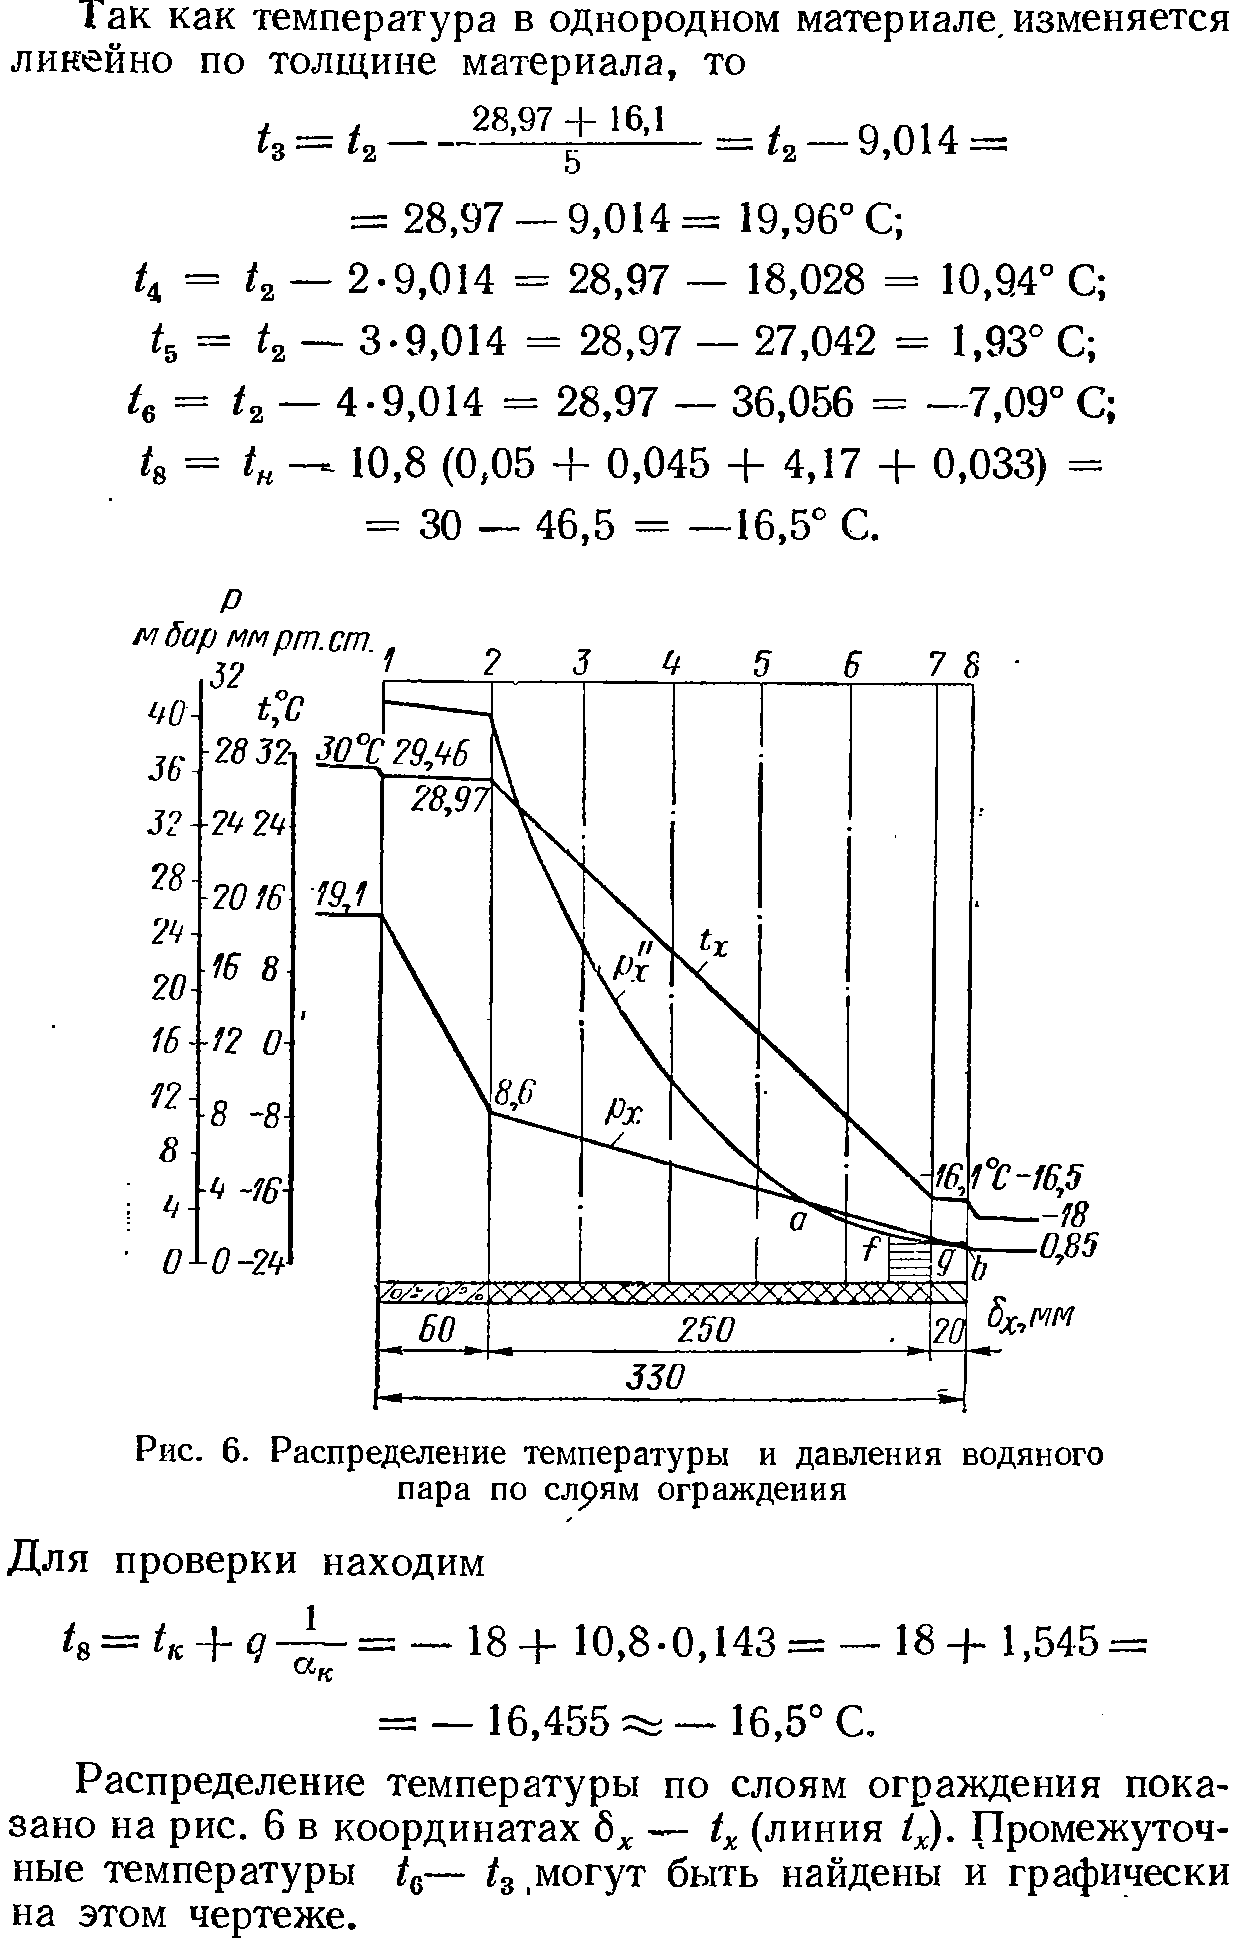 Распределение температуры по слоям ограждения показано на рис. 6 в координатах 6 — 4 (линия /х). Промежуточные температуры д— ig,могут быть найдены и графически на этом чертеже.